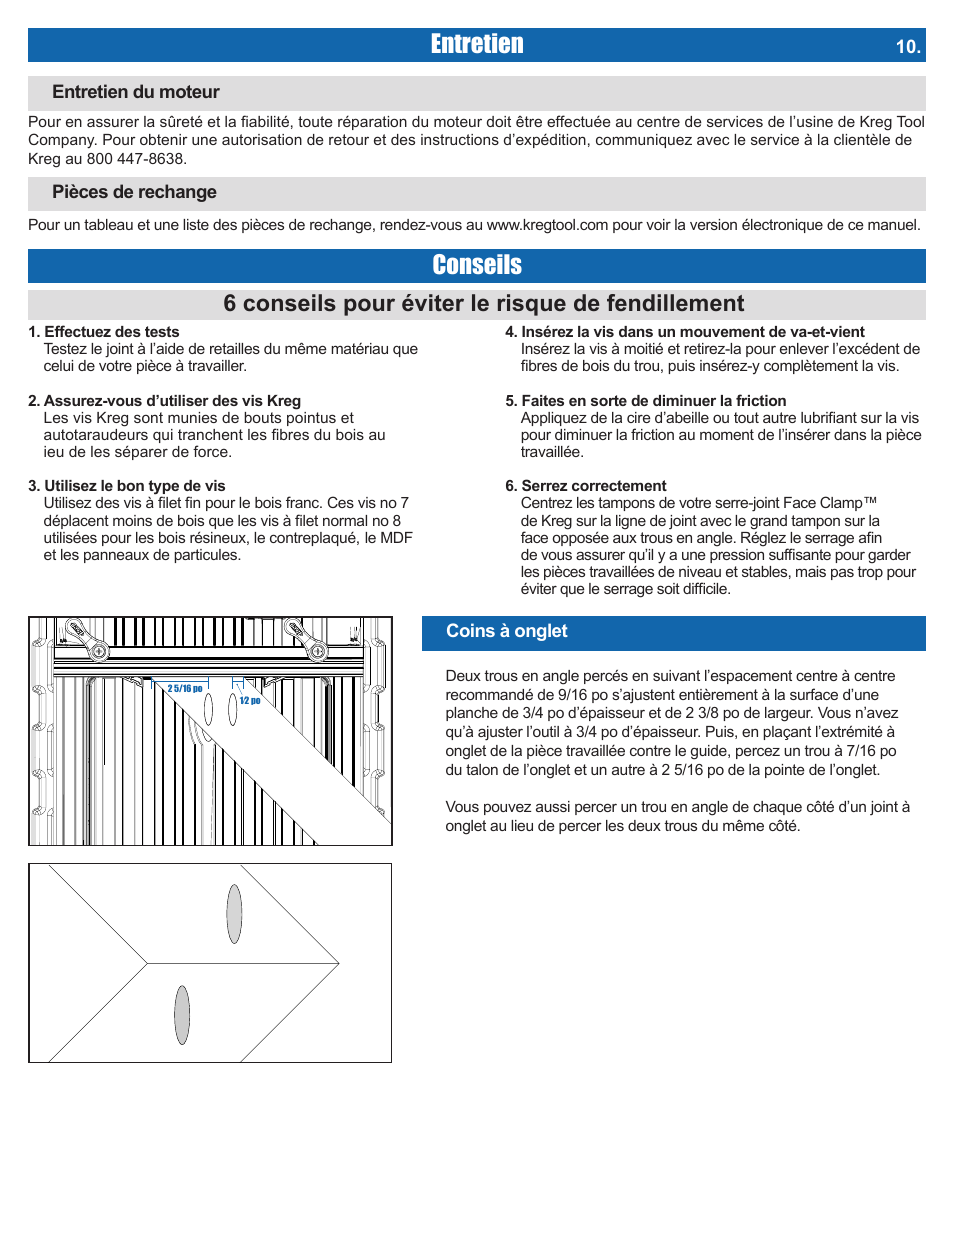 Entretien, Conseils, 6 conseils pour éviter le risque de fendillement | Kreg DB210 Foreman Pocket-Hole Machine User Manual | Page 27 / 44